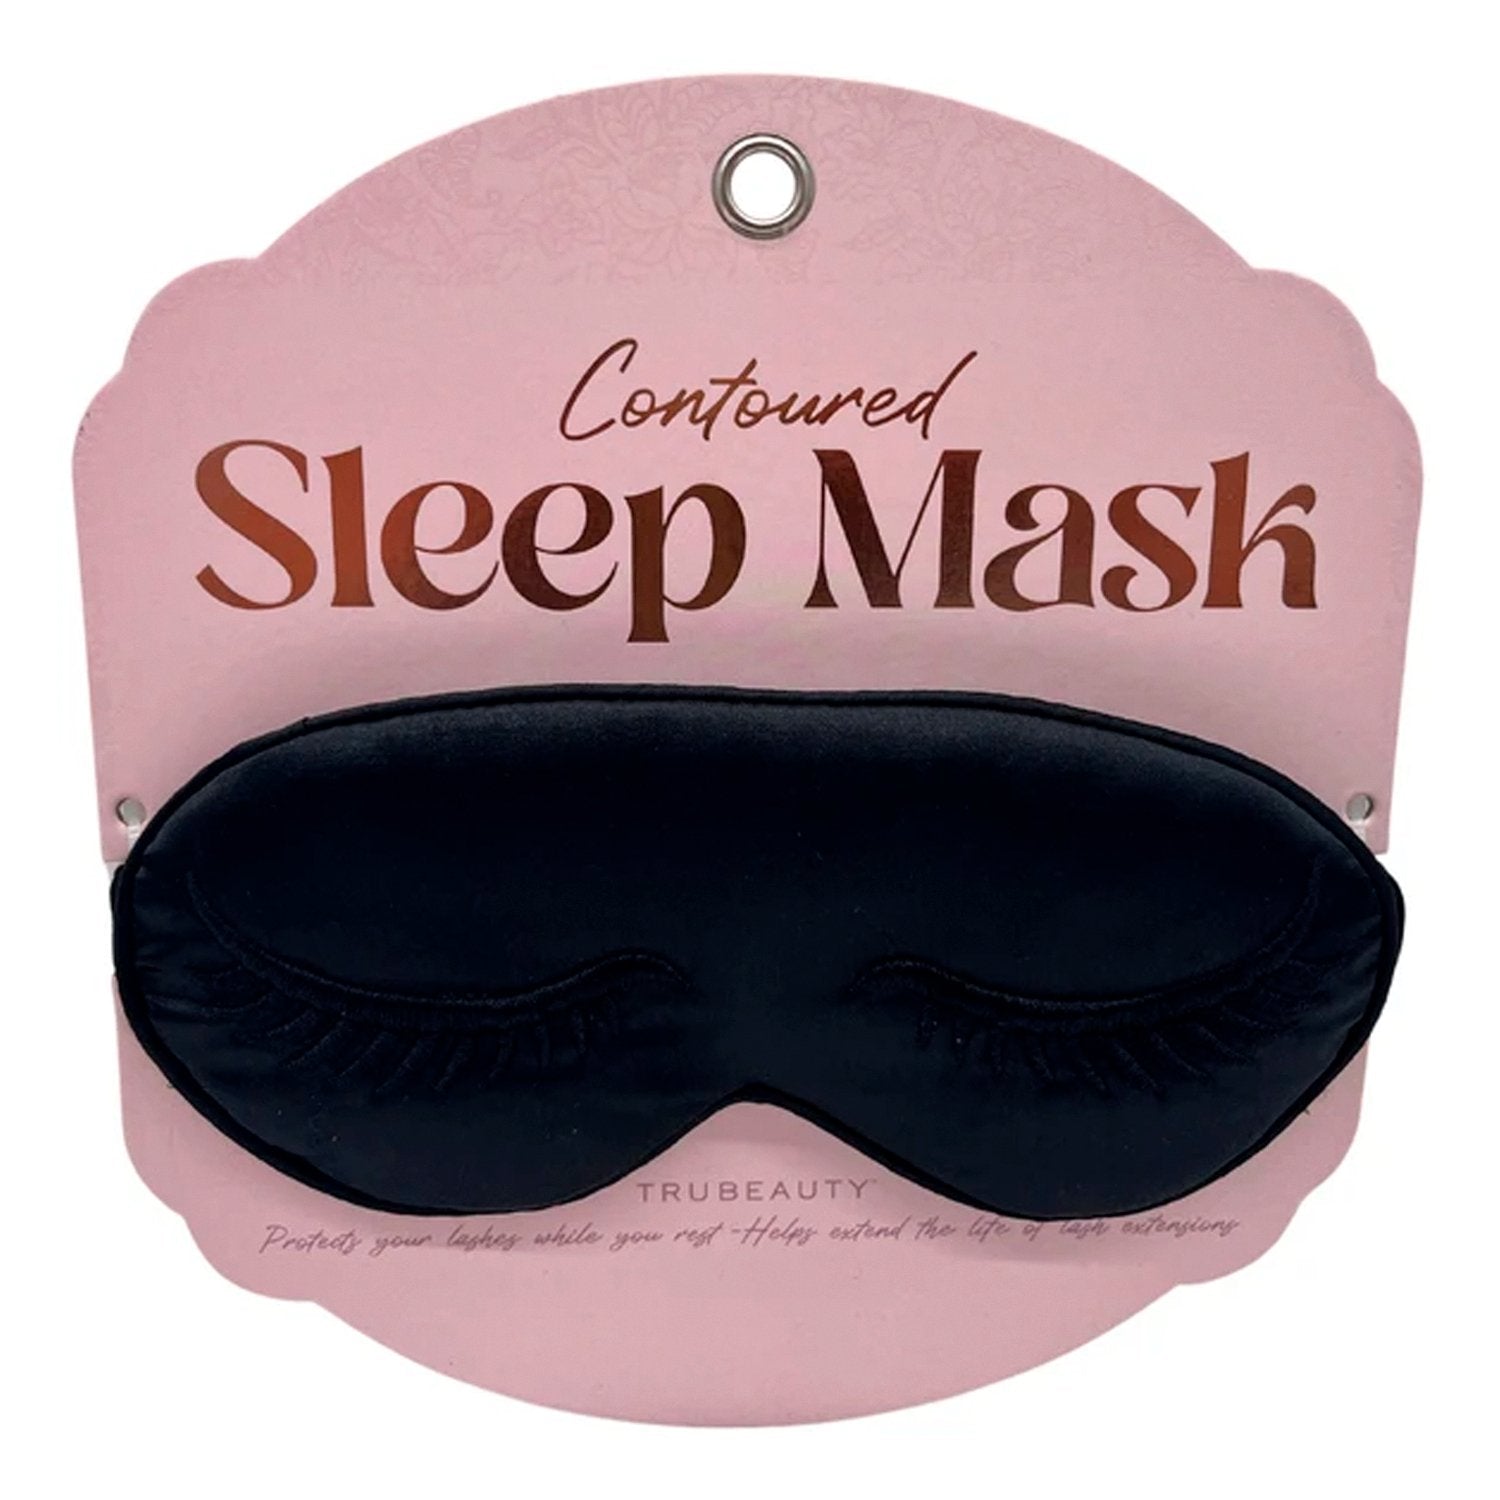 TruBeauty Contoured Sleep Mask Black